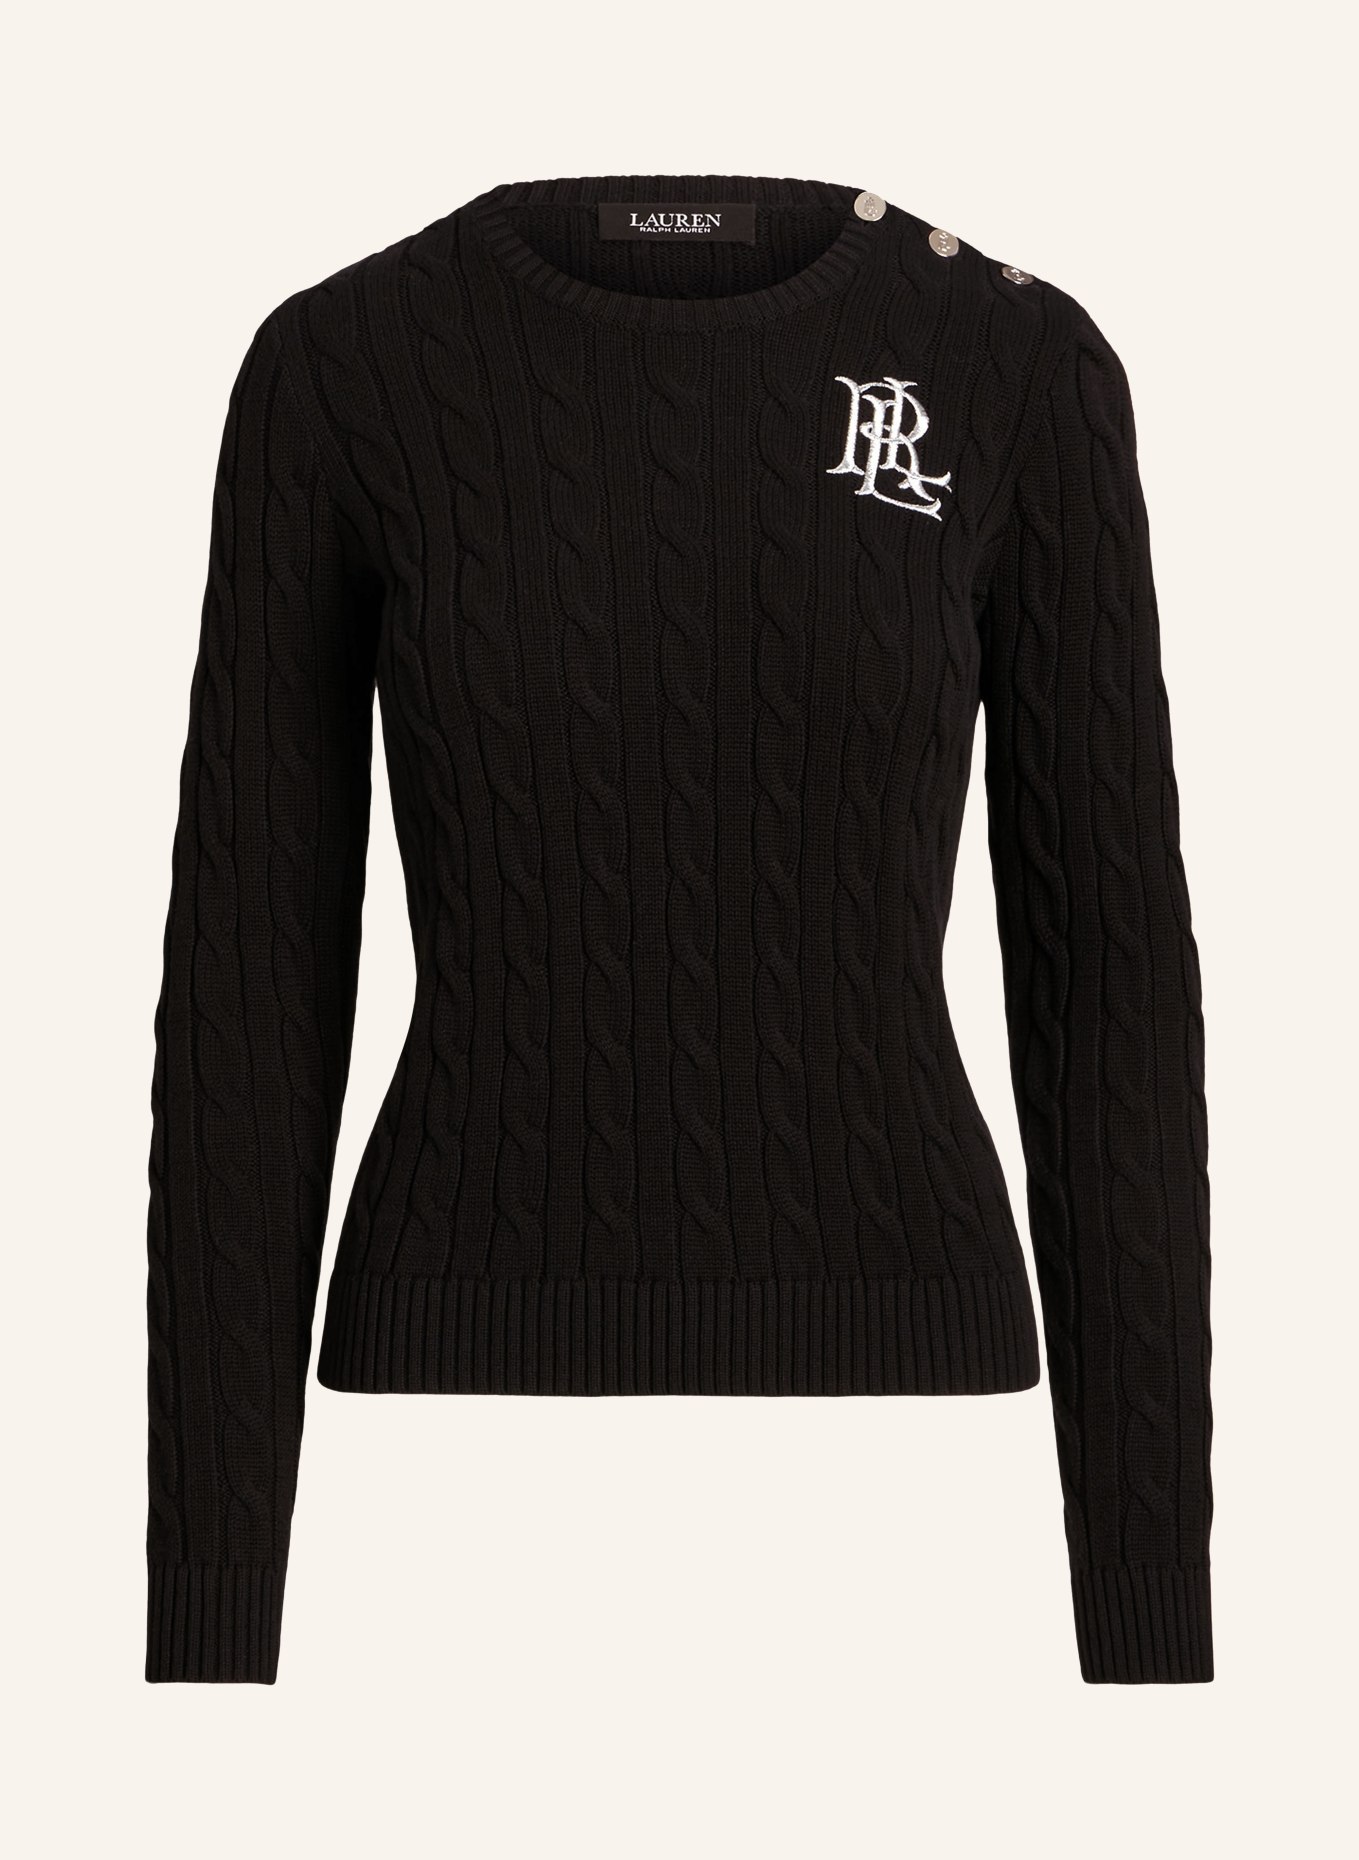 LAUREN RALPH LAUREN Sweater with glitter thread, Color: BLACK (Image 1)